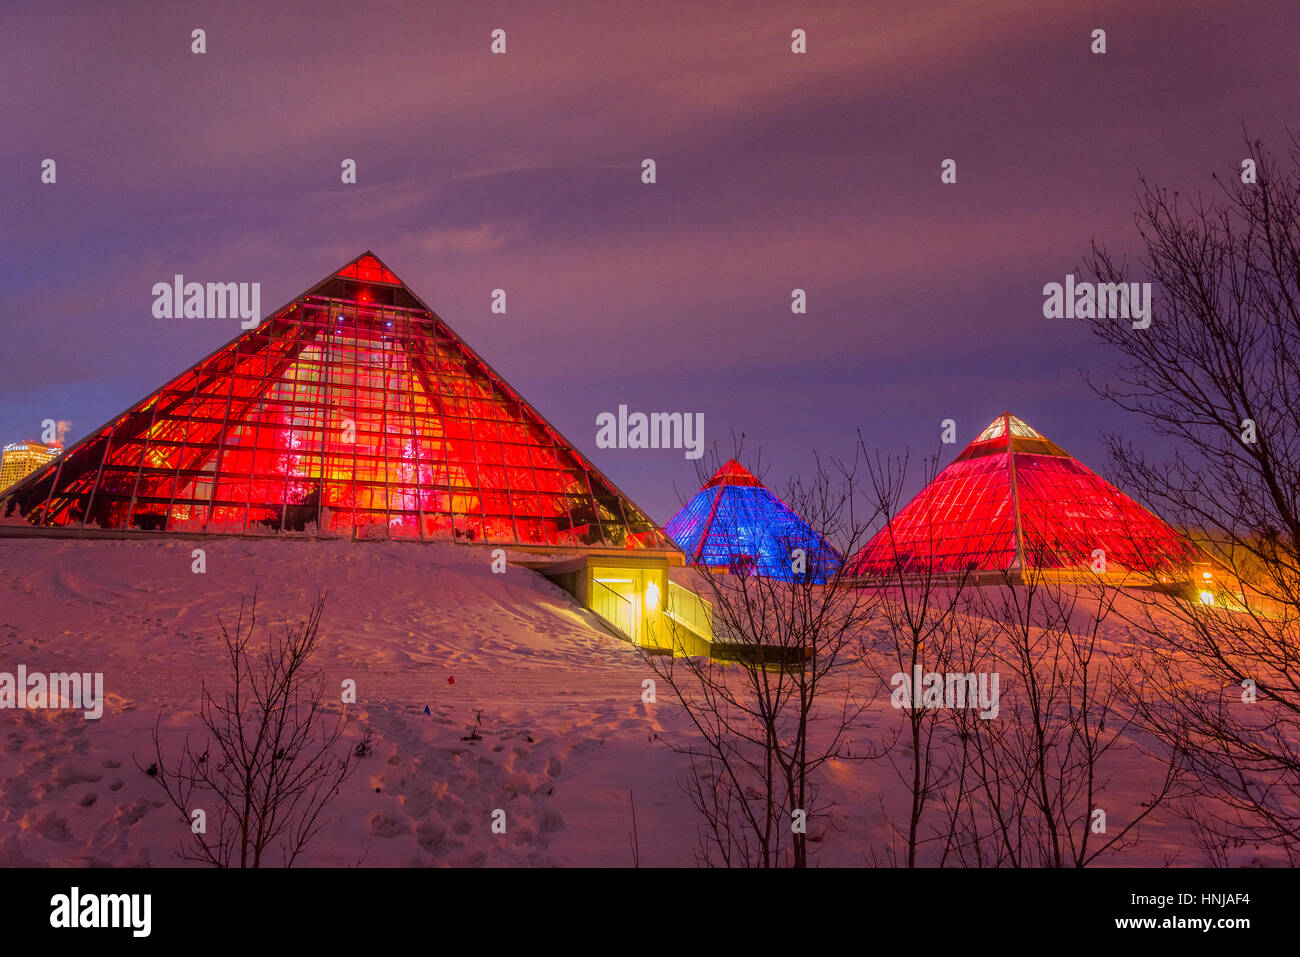 Allumé Muttart Conservatory pyramids, un jardin botanique à Edmonton, Alberta, Canada Banque D'Images